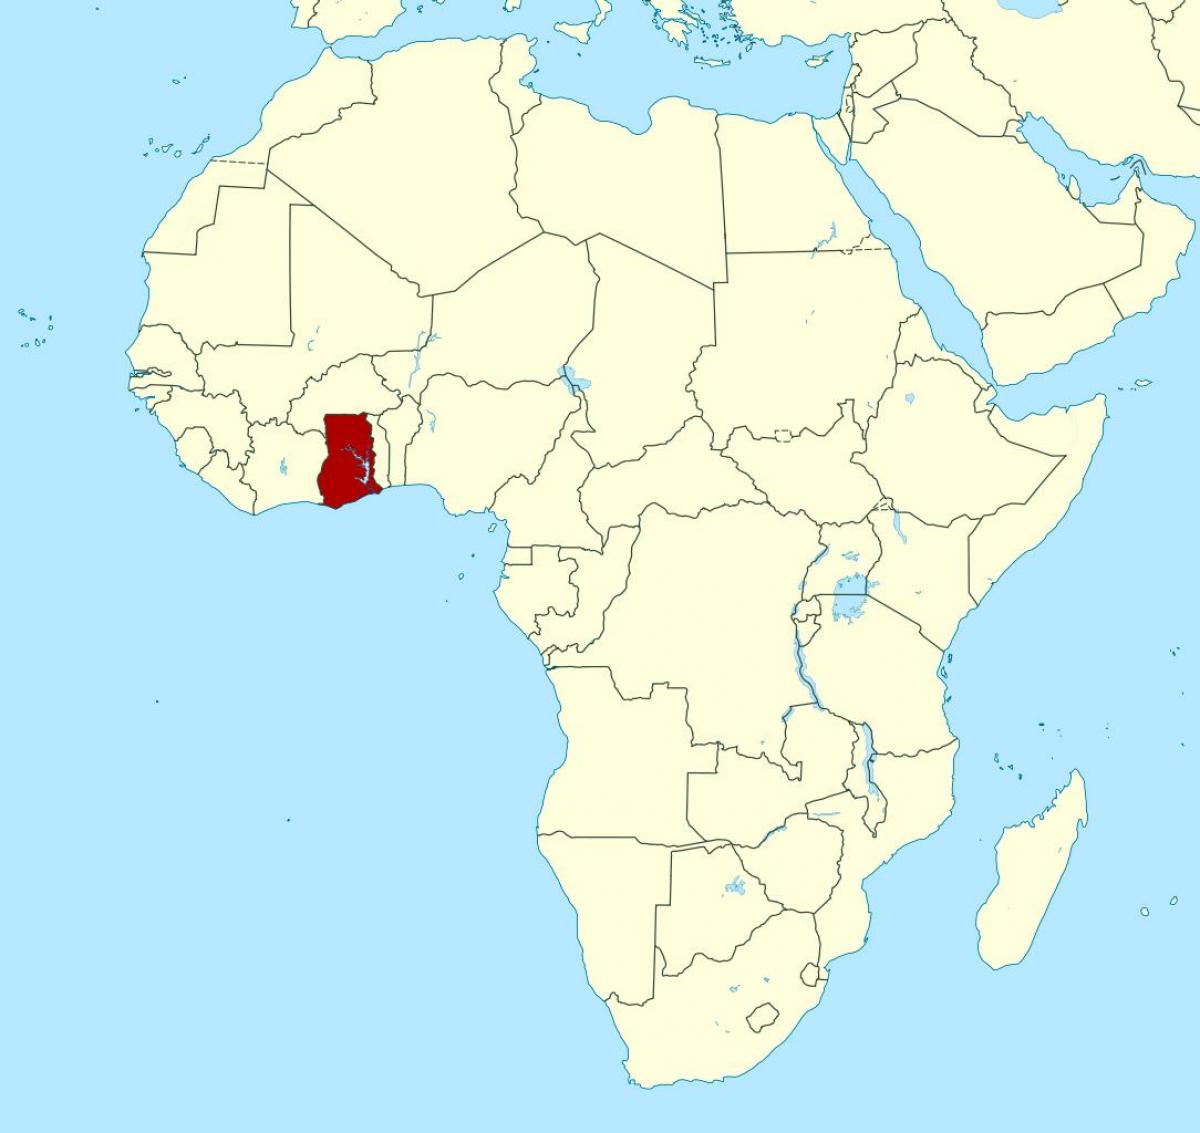 peta dari afrika menunjukkan ghana